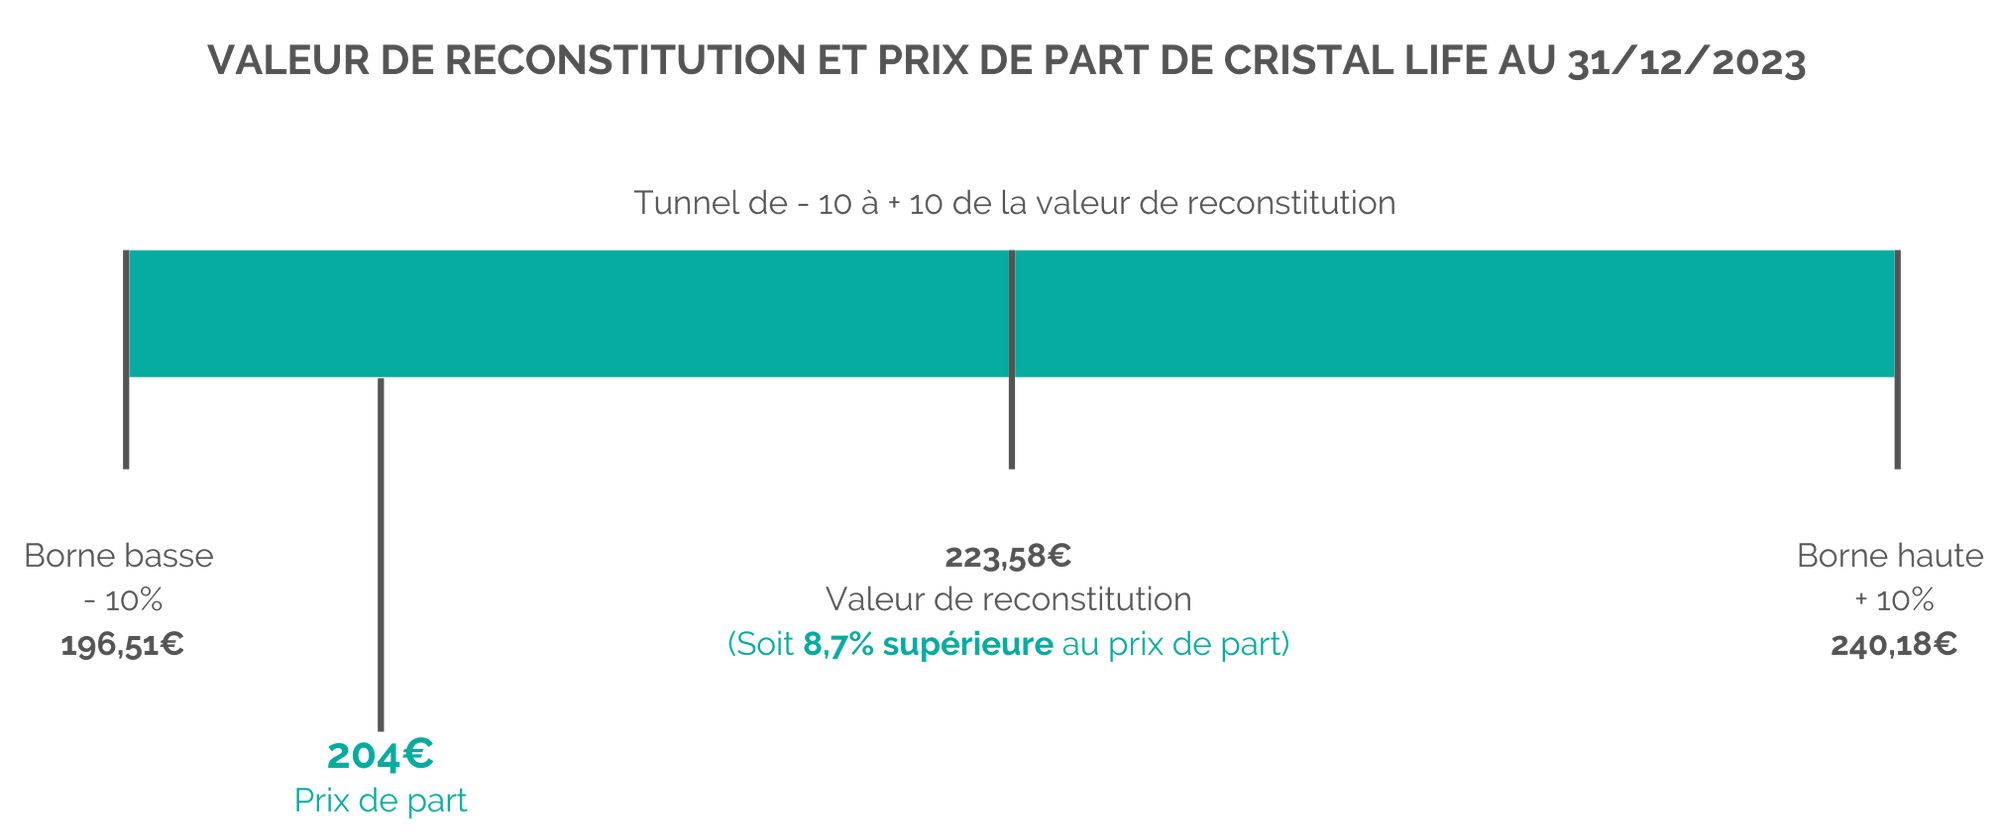 valeur-reco-prix-dpart-cristal-life-2023.png